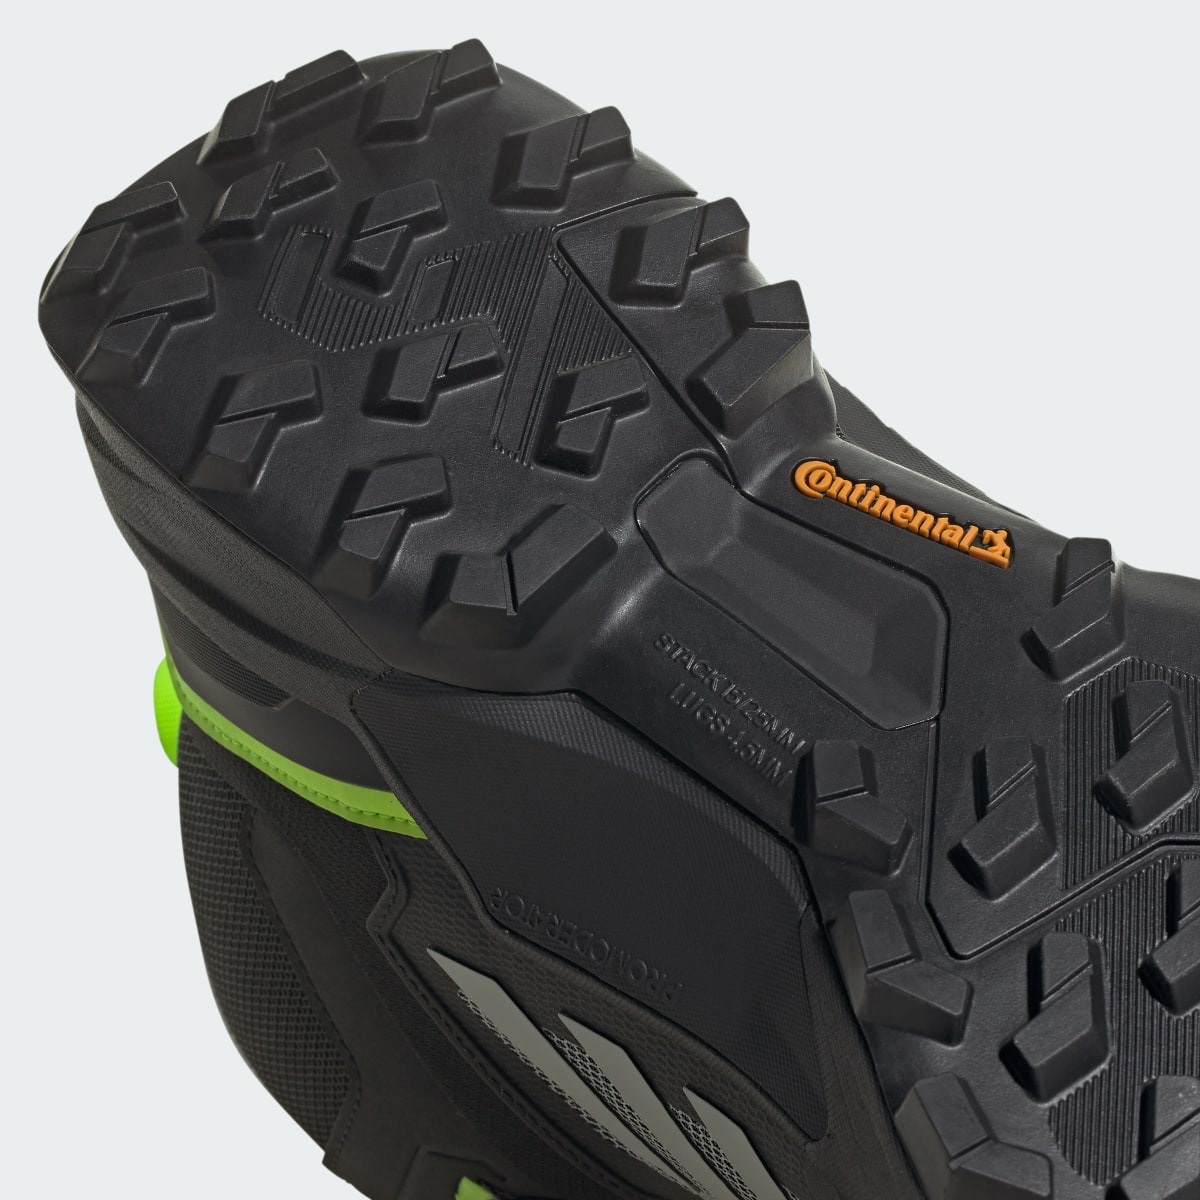 Adidas Terrex Swift R3 Mid GORE-TEX Yürüyüş Ayakkabısı. 5